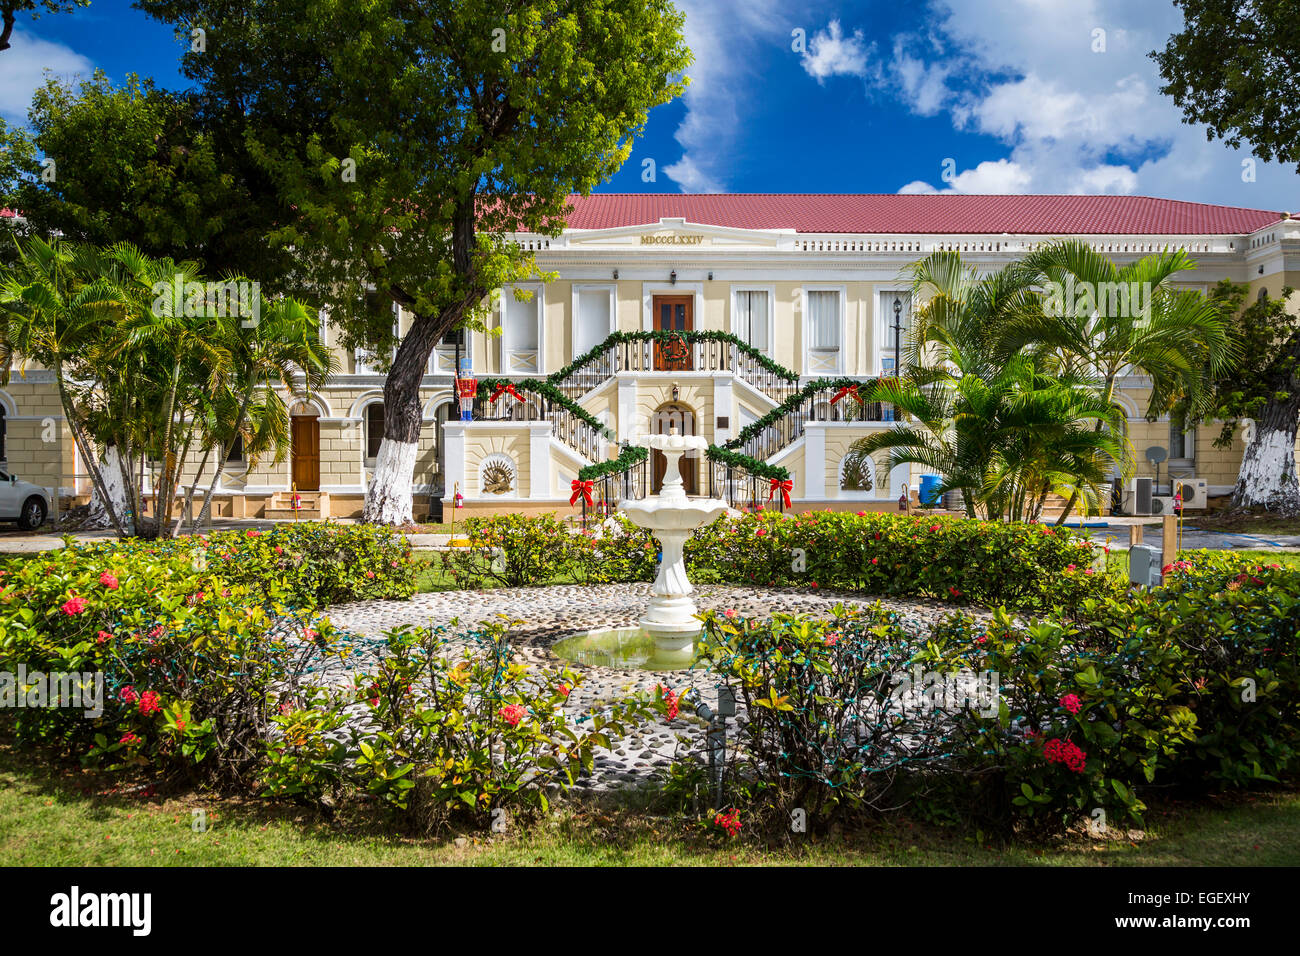 La Legislatura de las Islas Vírgenes están decoradas para Navidad en Charlotte Amalie, San Thomas, Islas Vírgenes de EE.UU., el Caribe. Foto de stock